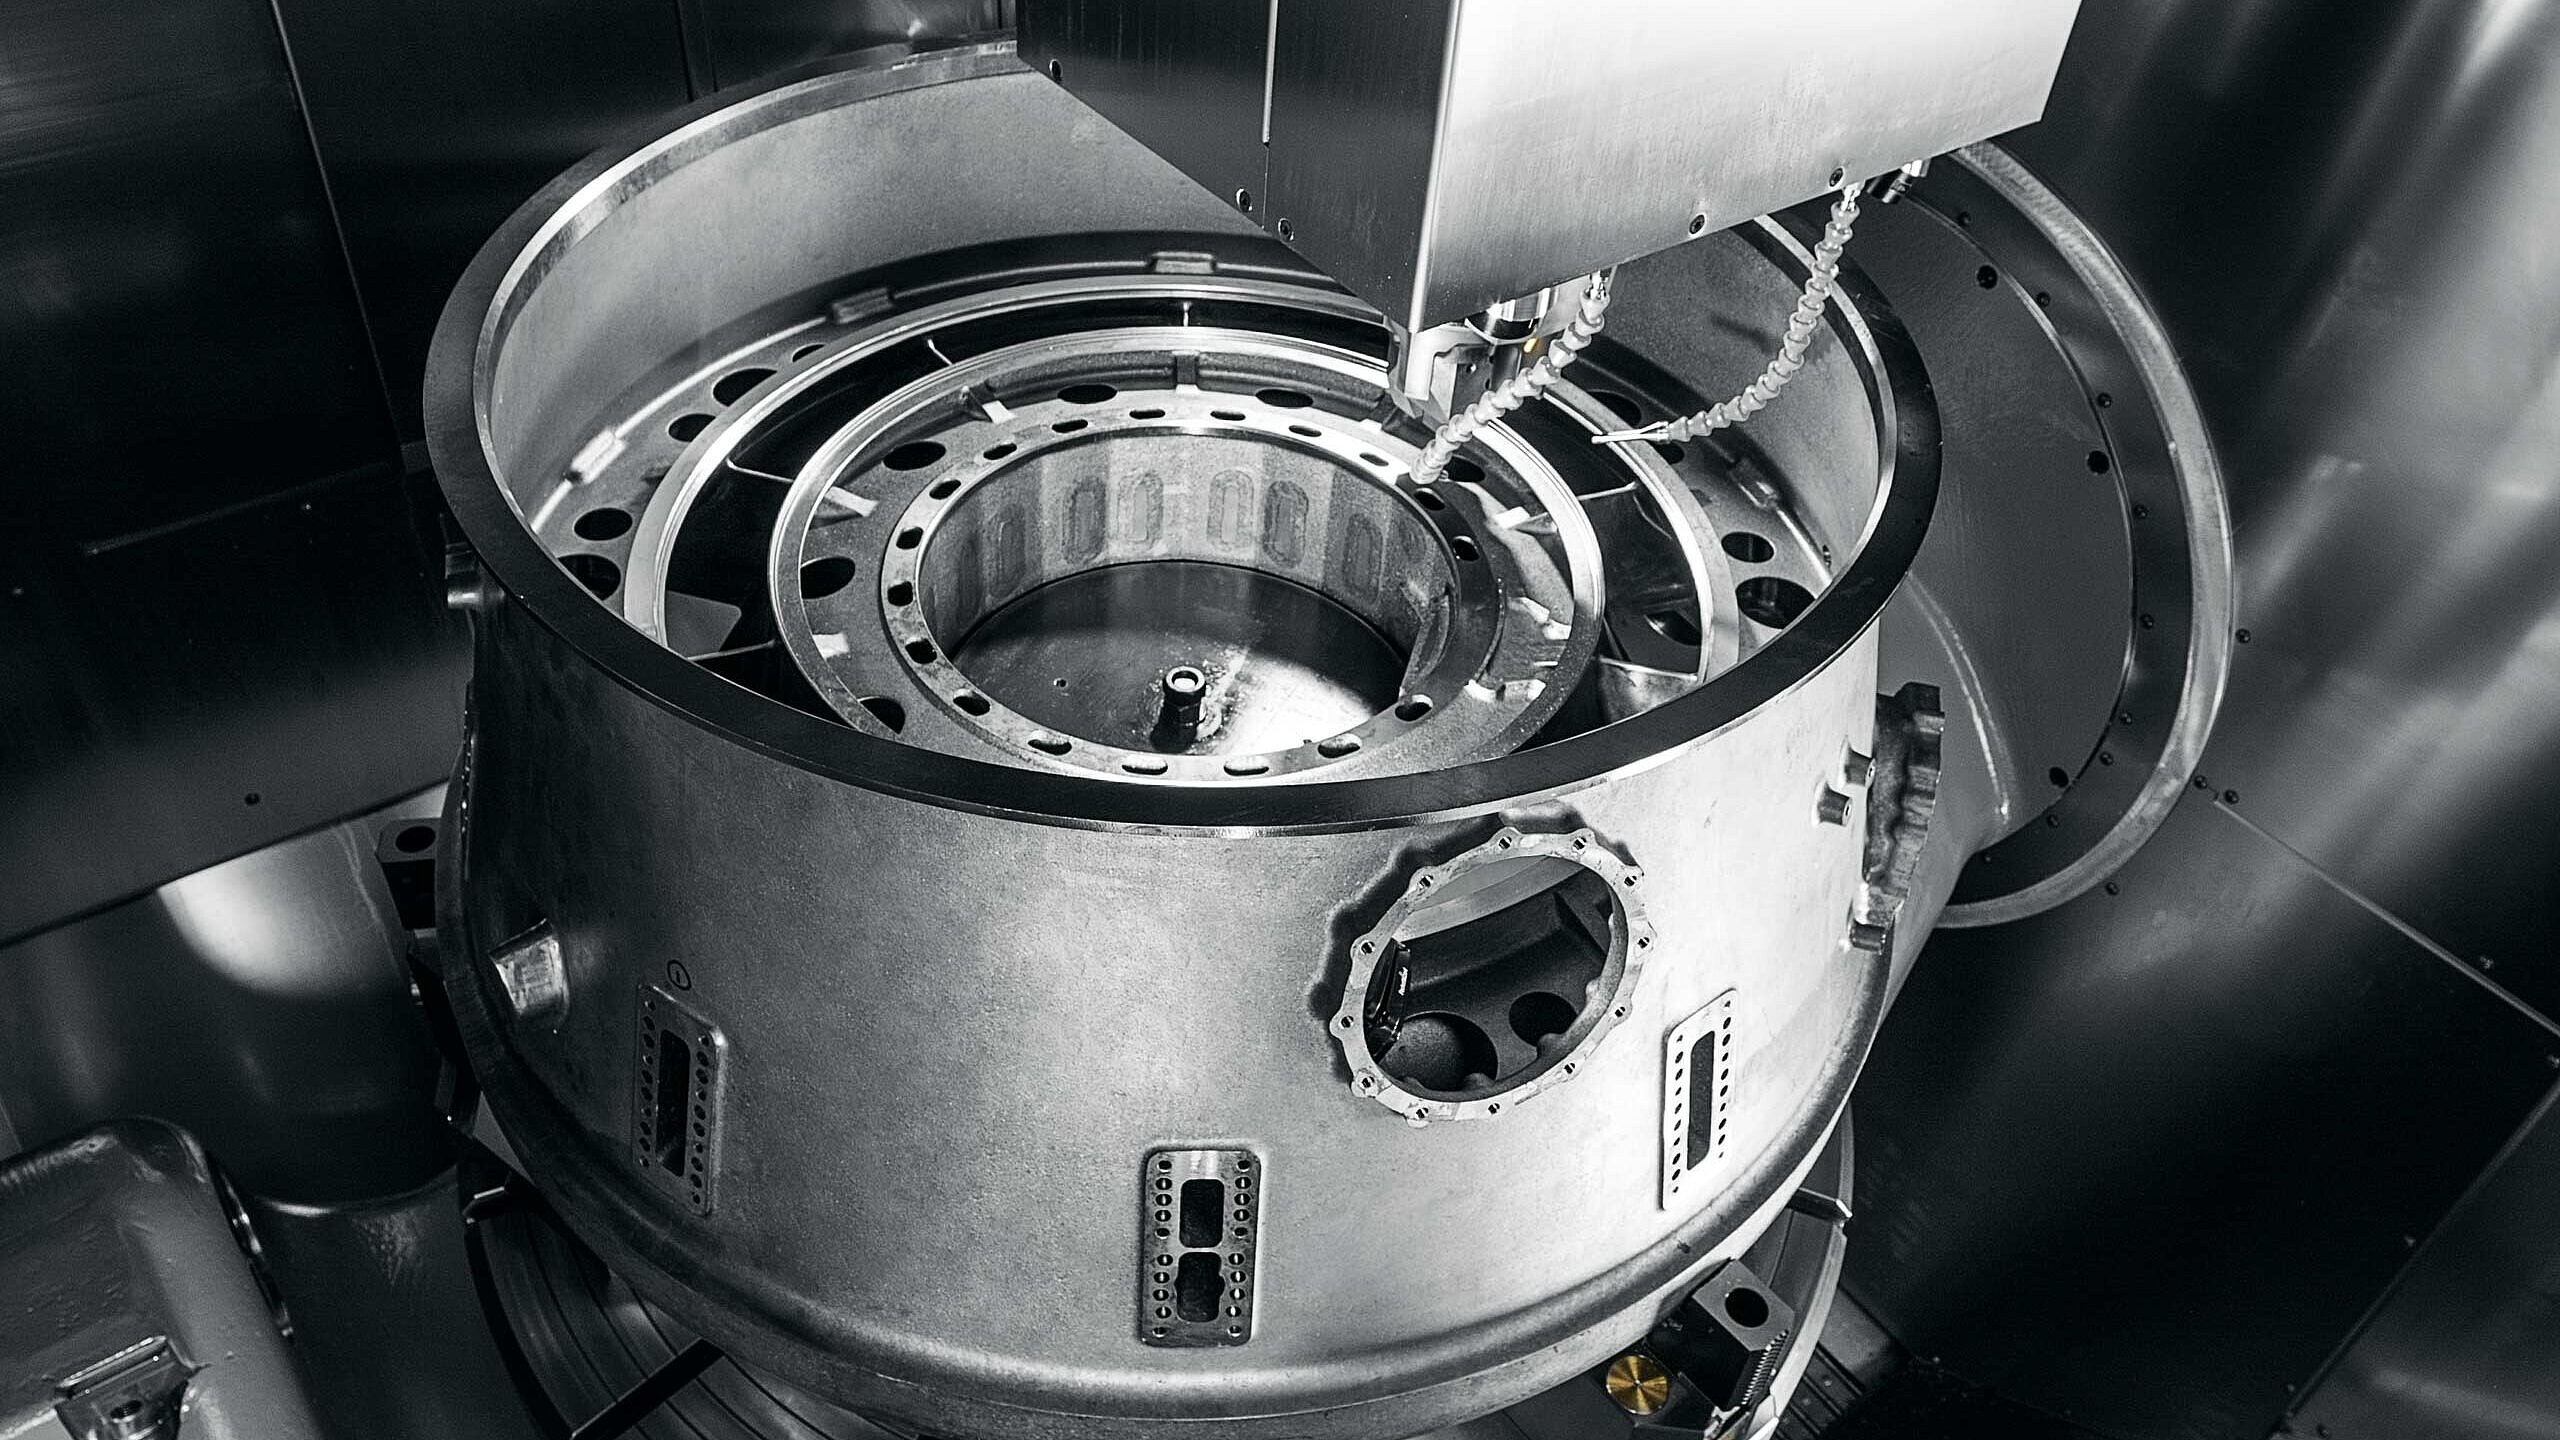 Hermle fertigt ein Turbinengehäuse aus Titan auf der C 62 U MT dynamic